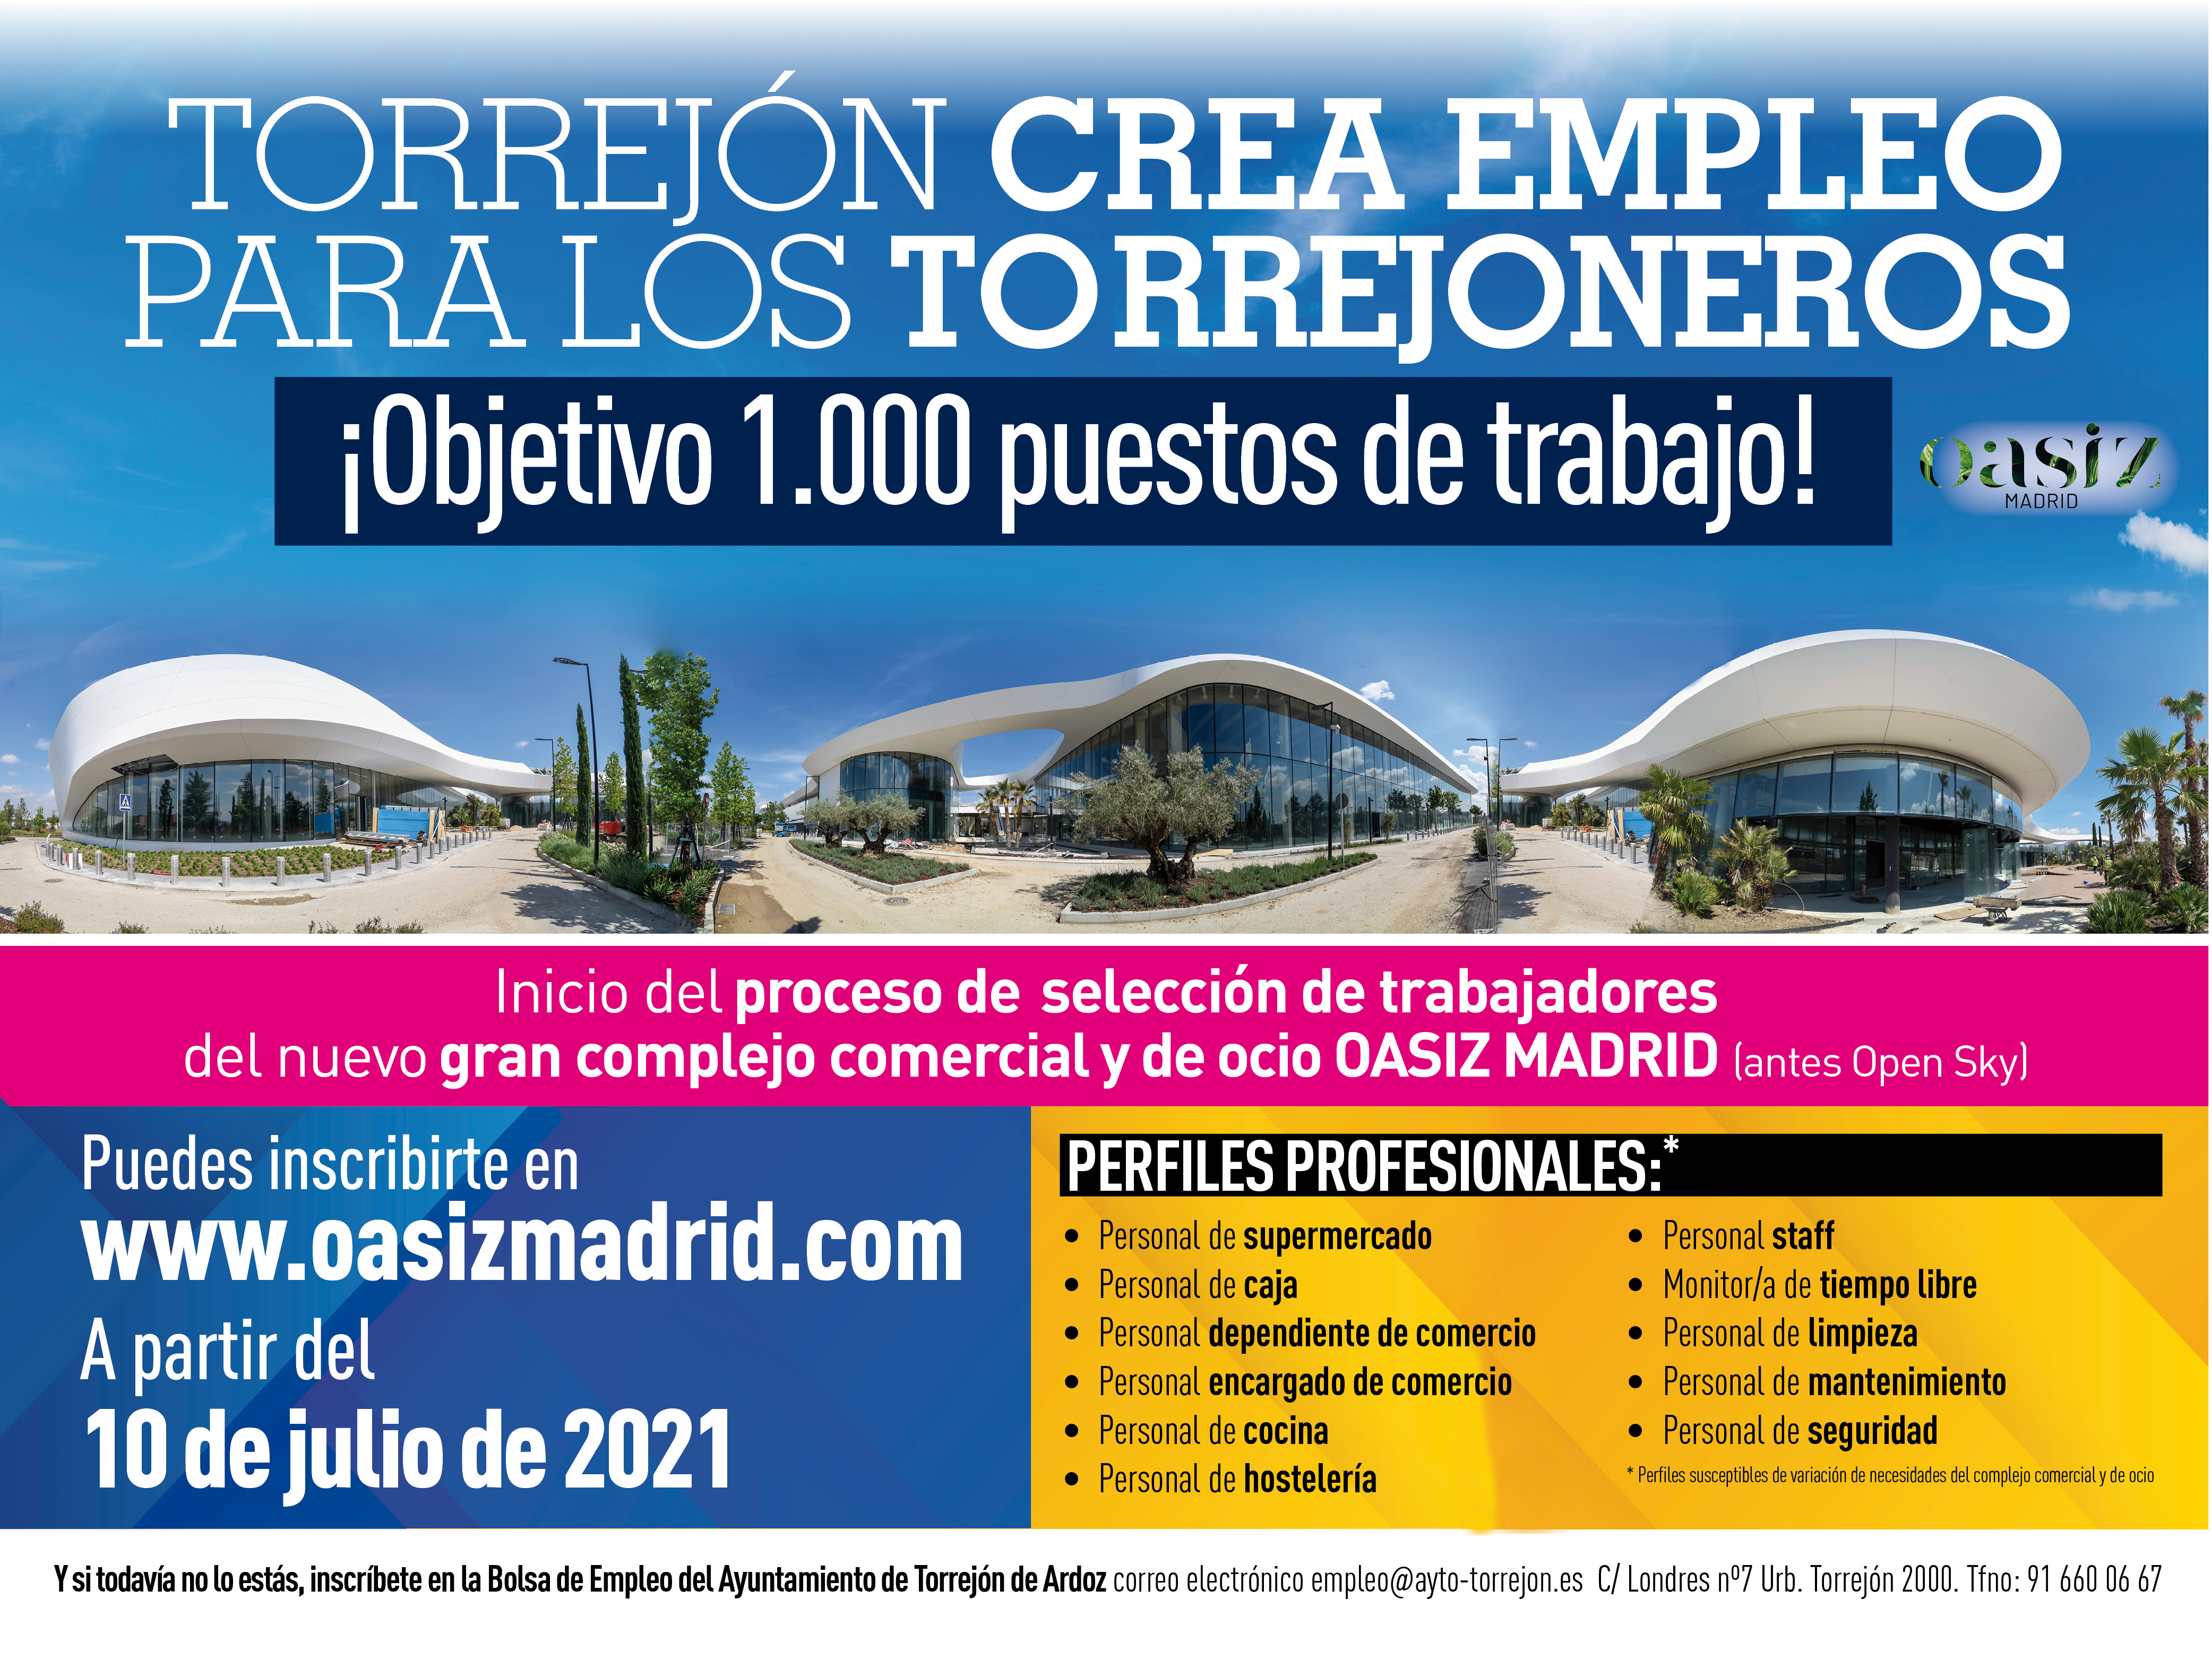 Se anuncia el inicio del proceso de selección de trabajadores por parte de la empresa promotora del nuevo gran complejo comercial y de ocio Oasiz Madrid, antes Open Sky